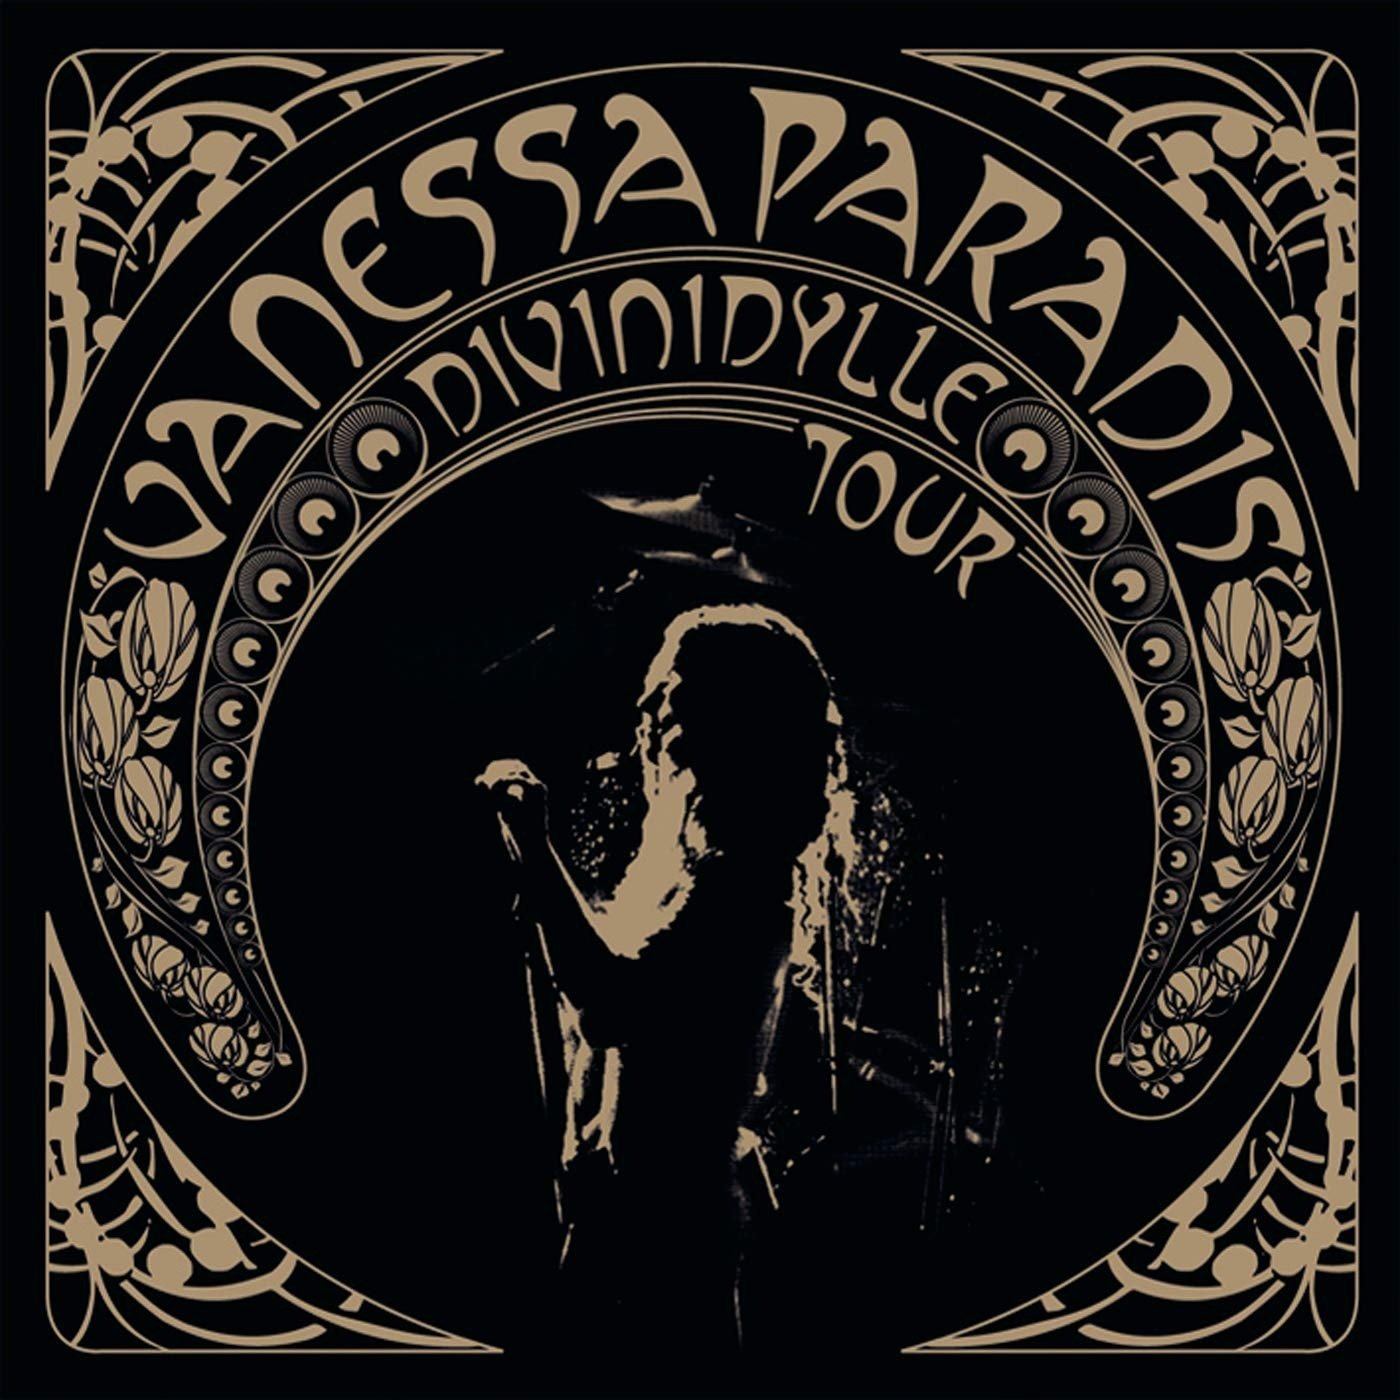 CD Shop - PARADIS, VANESSA DIVINIDYLLE TOUR